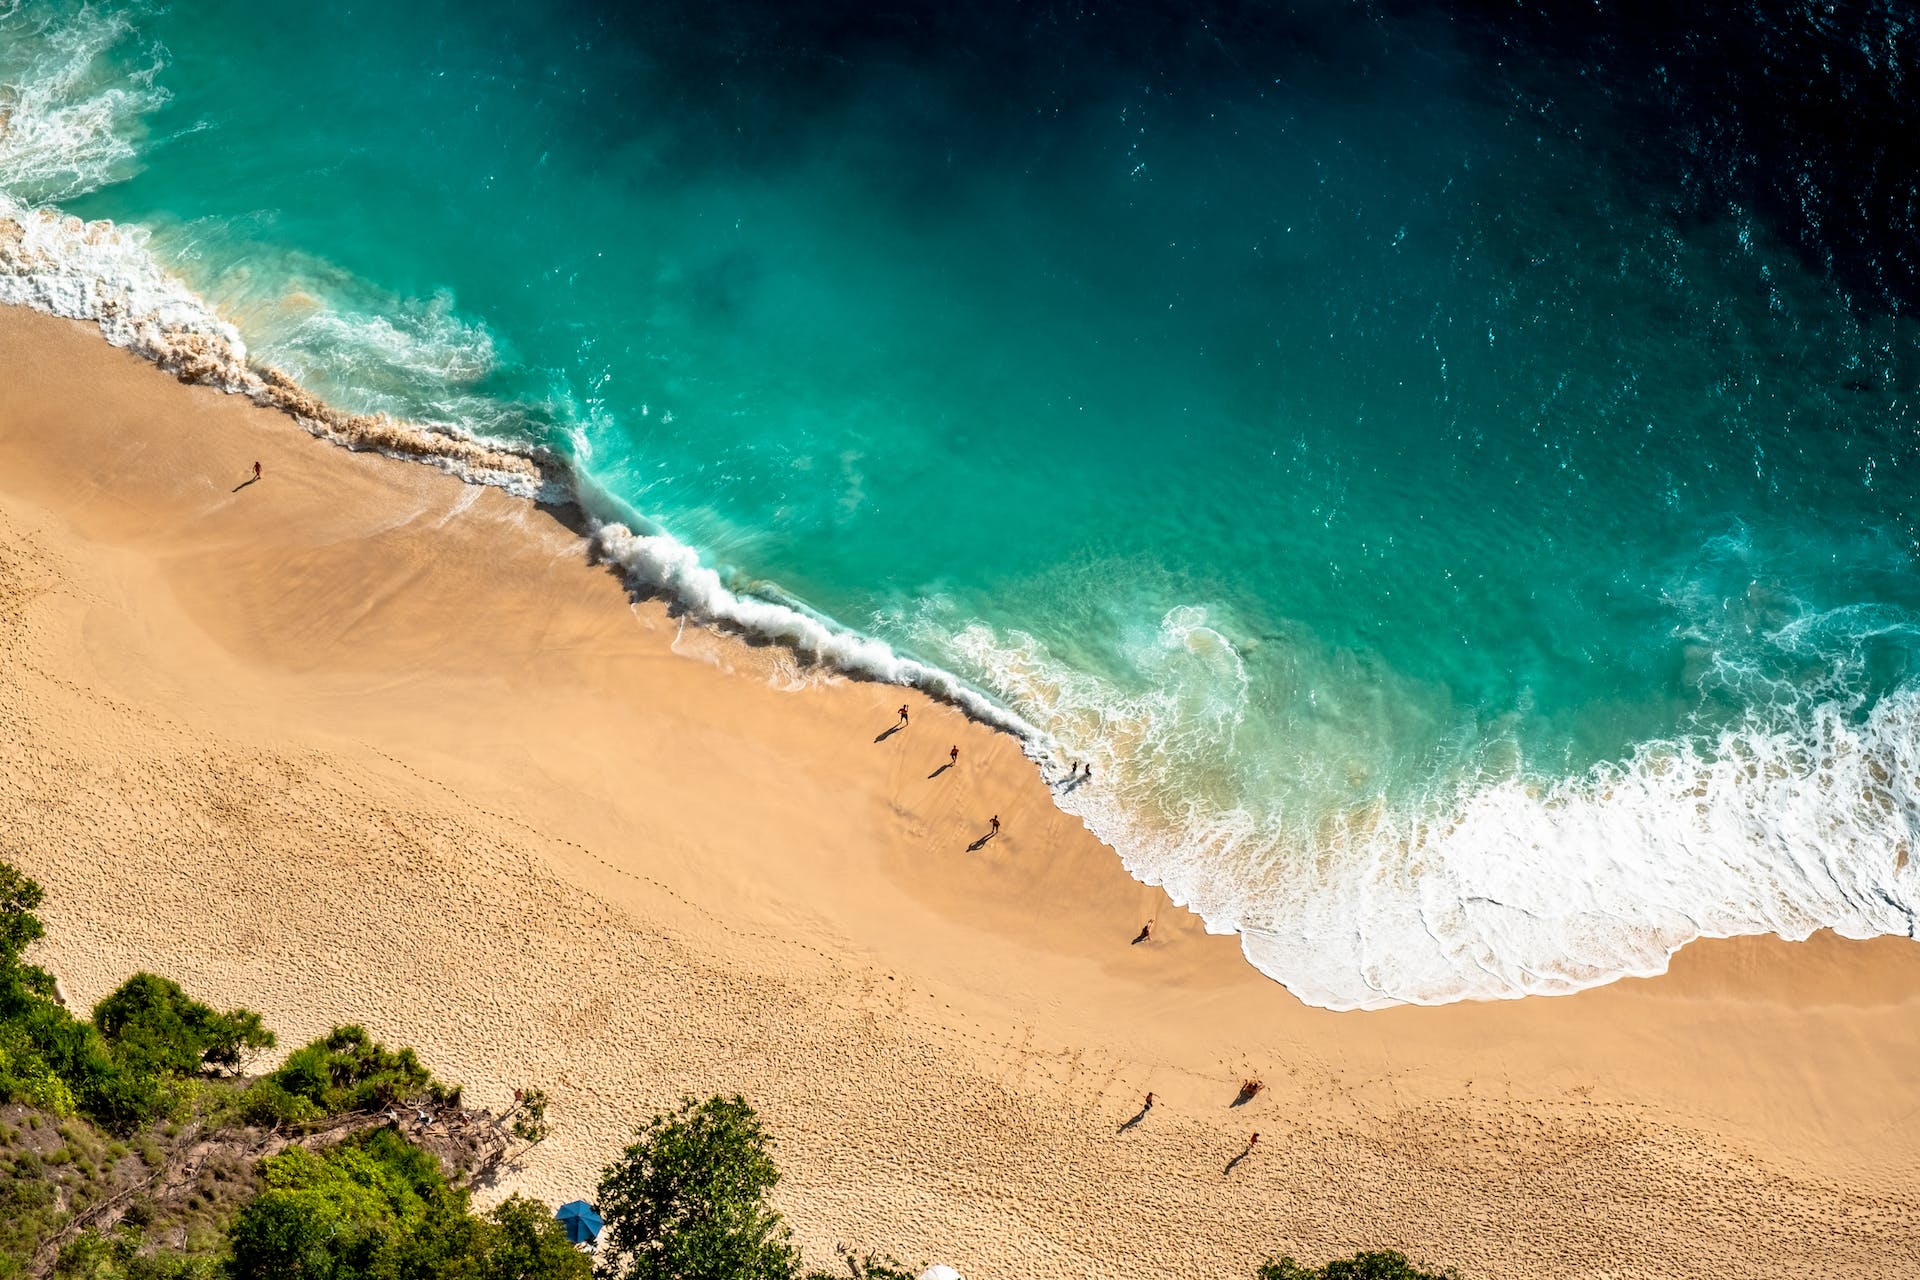 Drohnenbild vom Strand | Quelle: Pexels